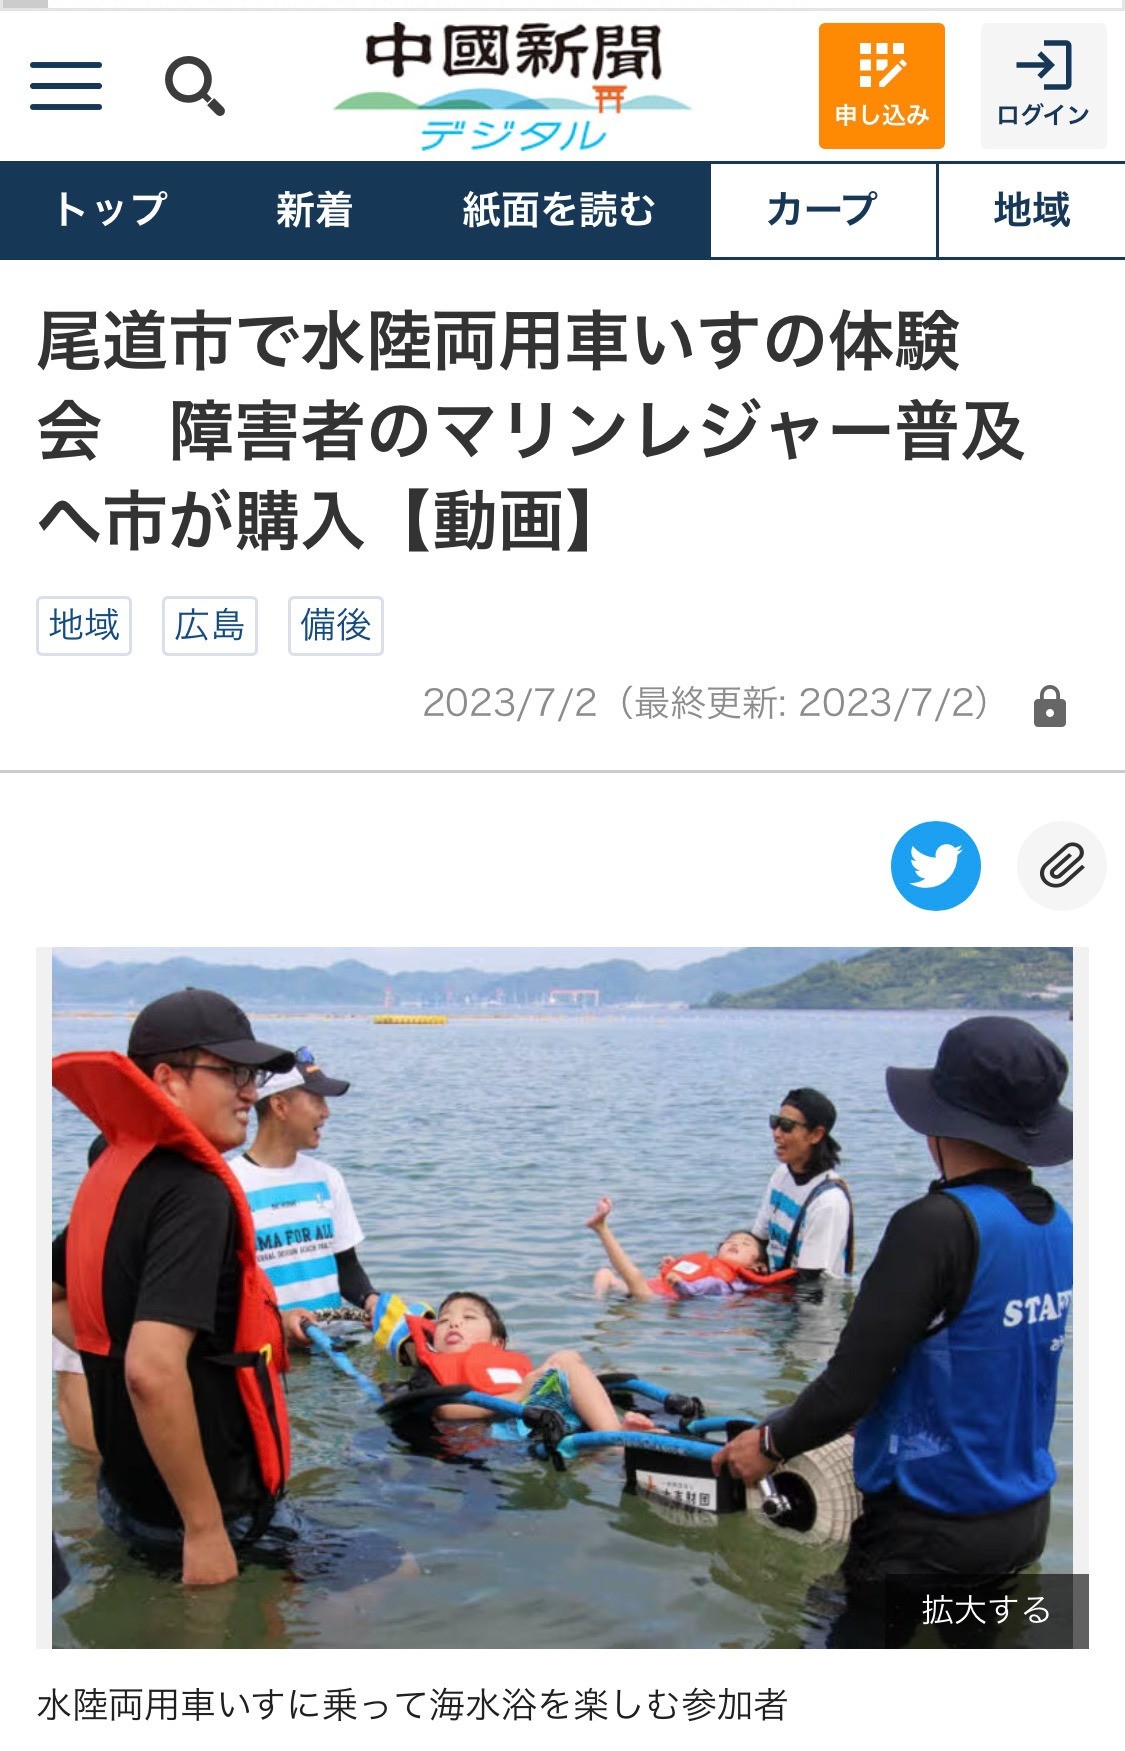 尾道市瀬戸田サンセットビーチでのユニバーサルビーチ体験会を中国新聞に取り上げていただきました。